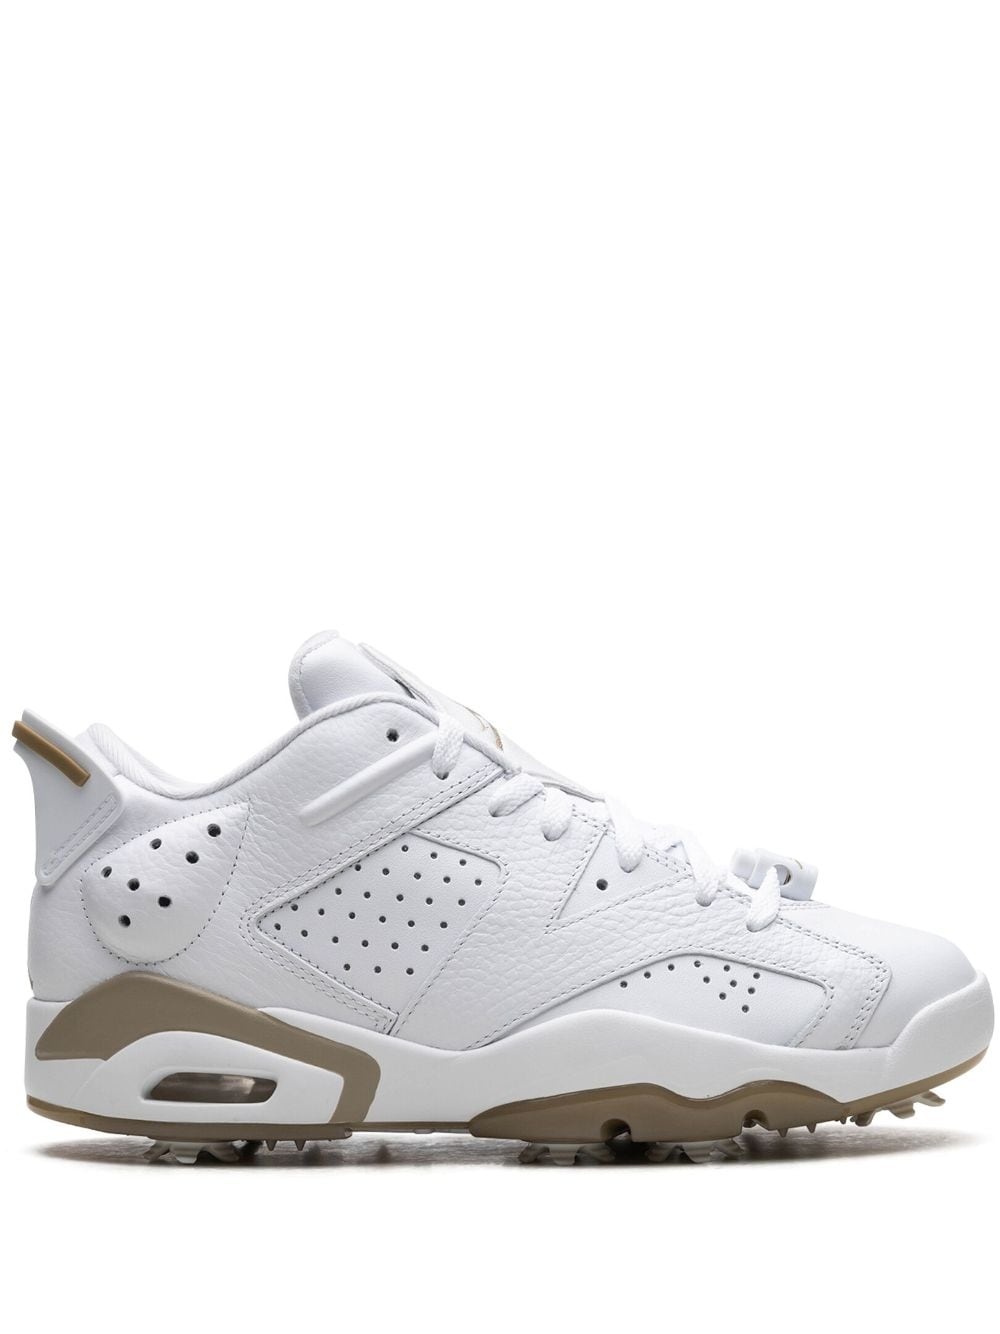 Air Jordan 6 Low Golf "White/Khaki" sneakers - 1